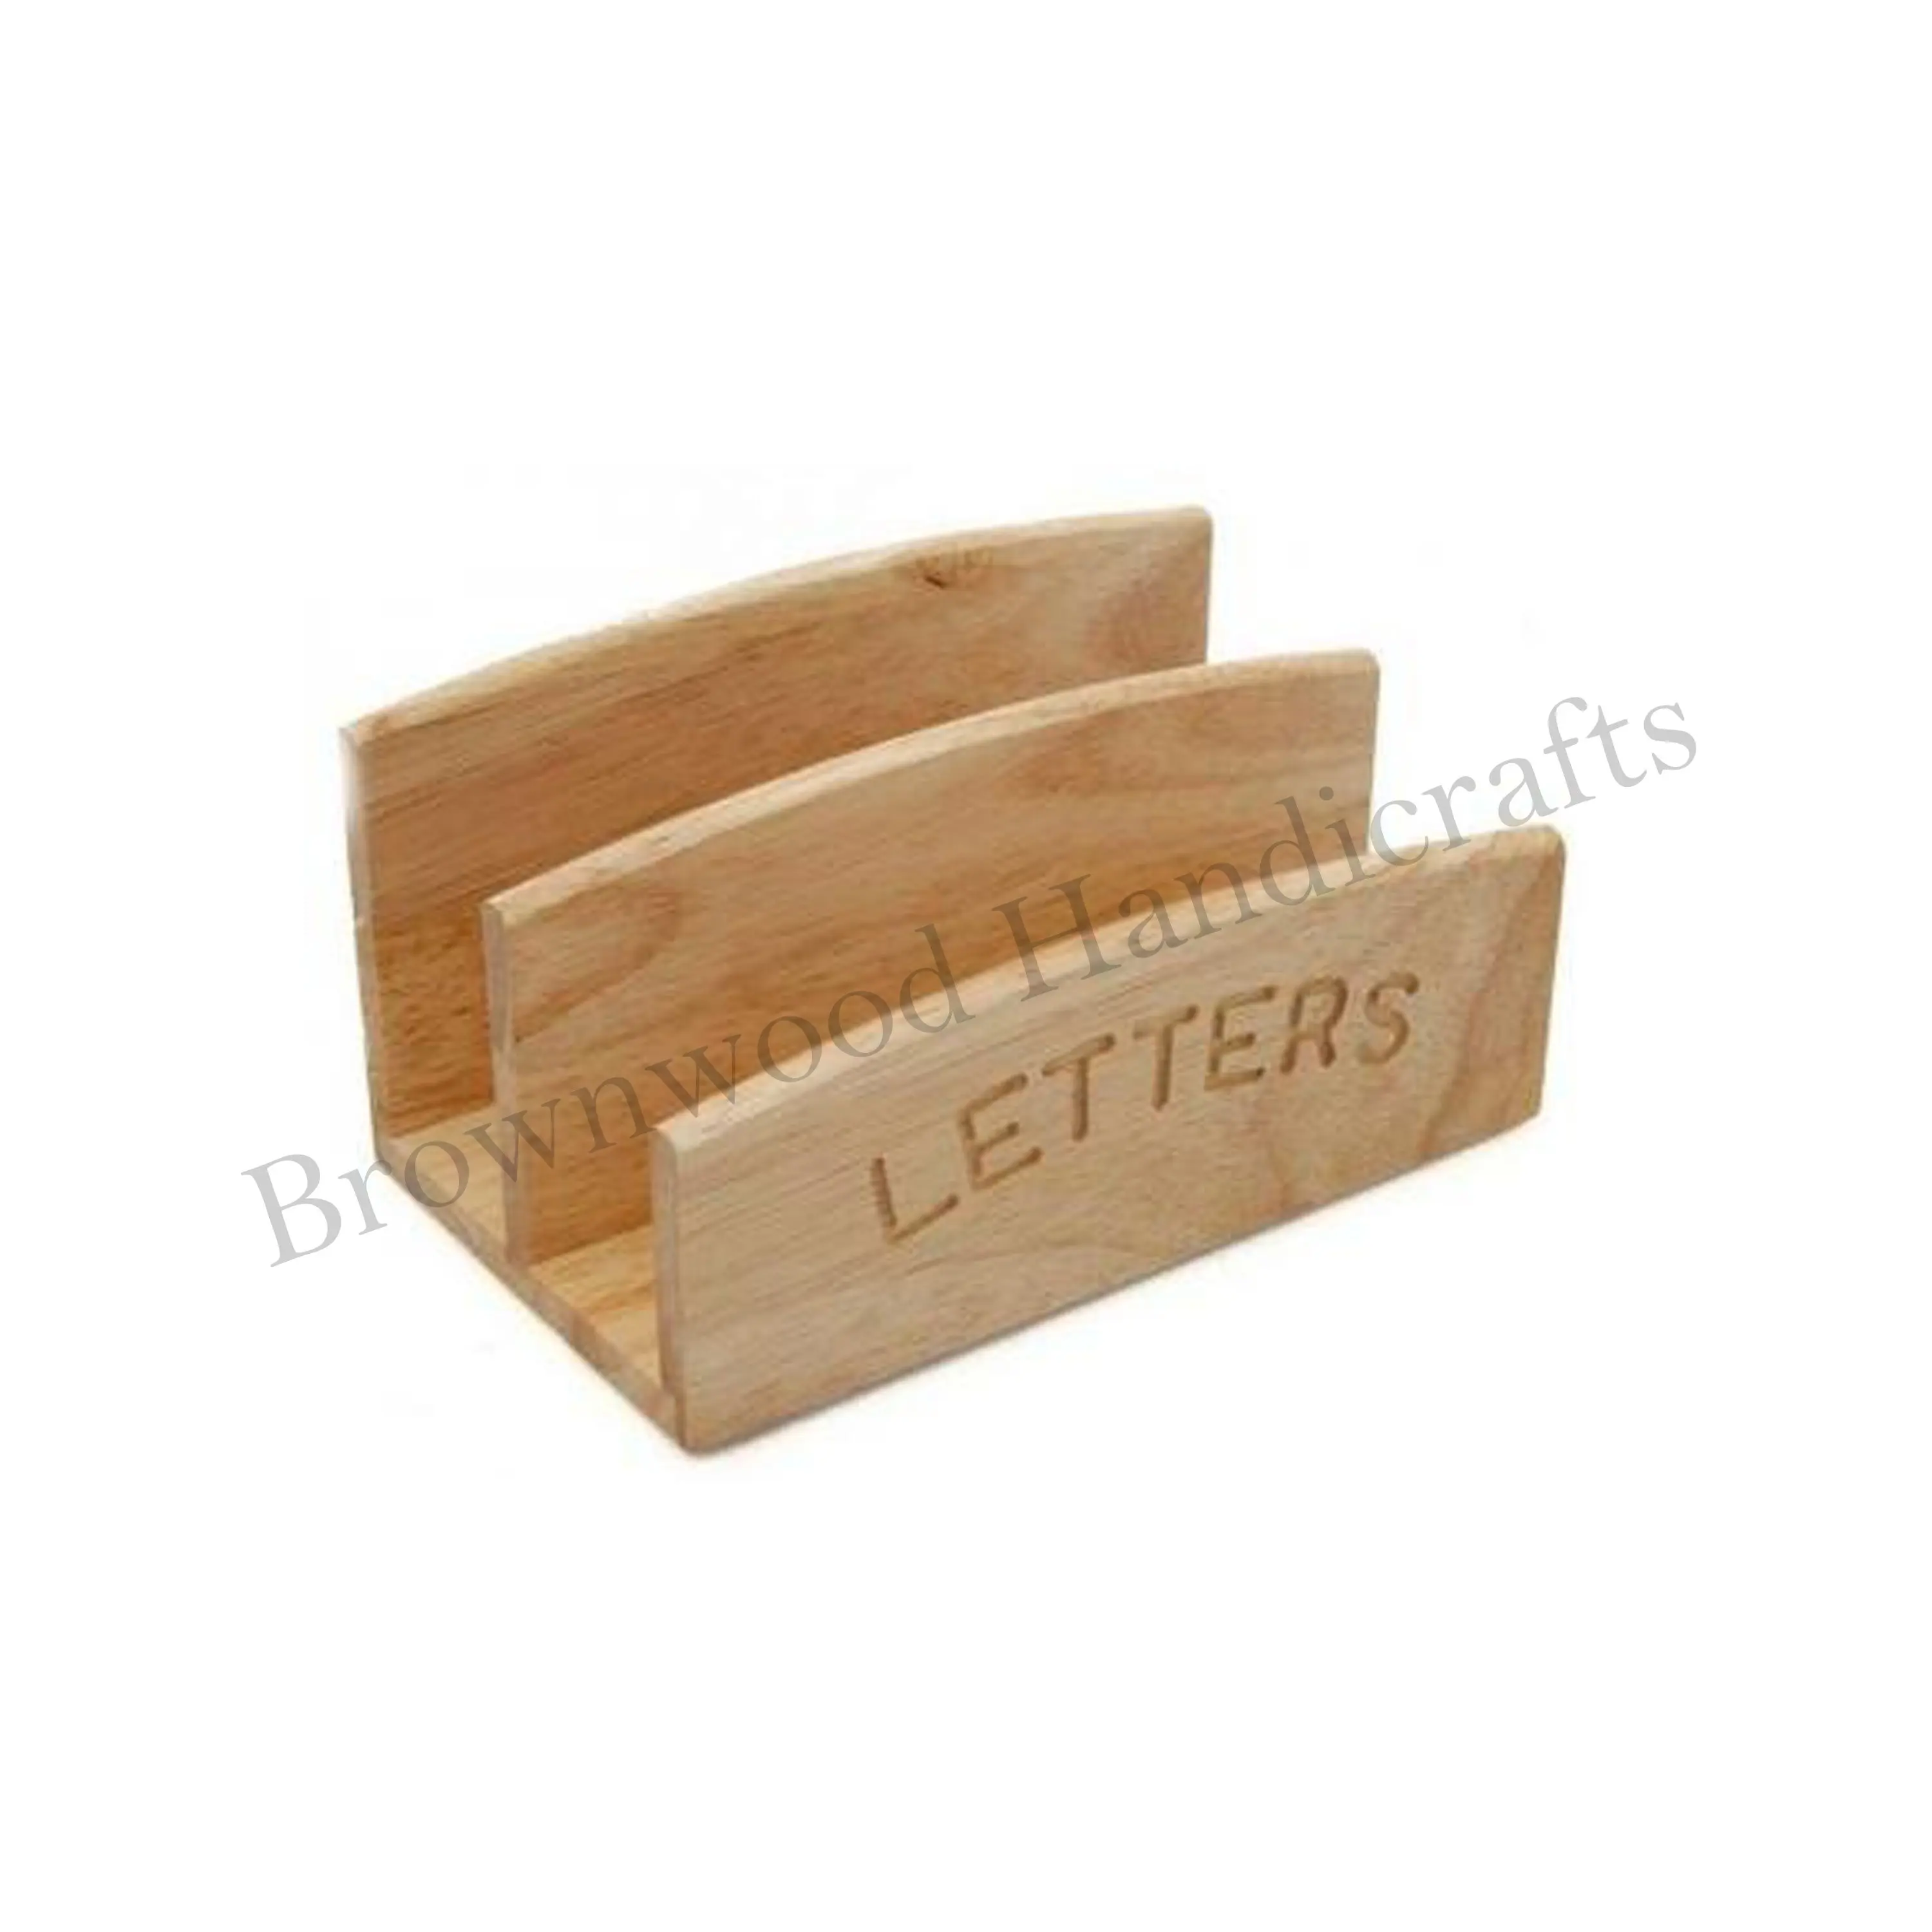 गर्म बिक्री लकड़ी के हस्तनिर्मित सजावटी पत्र और पत्रिका धारक रैक, कार्यालय और घरेलू उपयोग के लिए और कारखाने की कीमत पर कार्यालय और घरेलू उपयोग के लिए